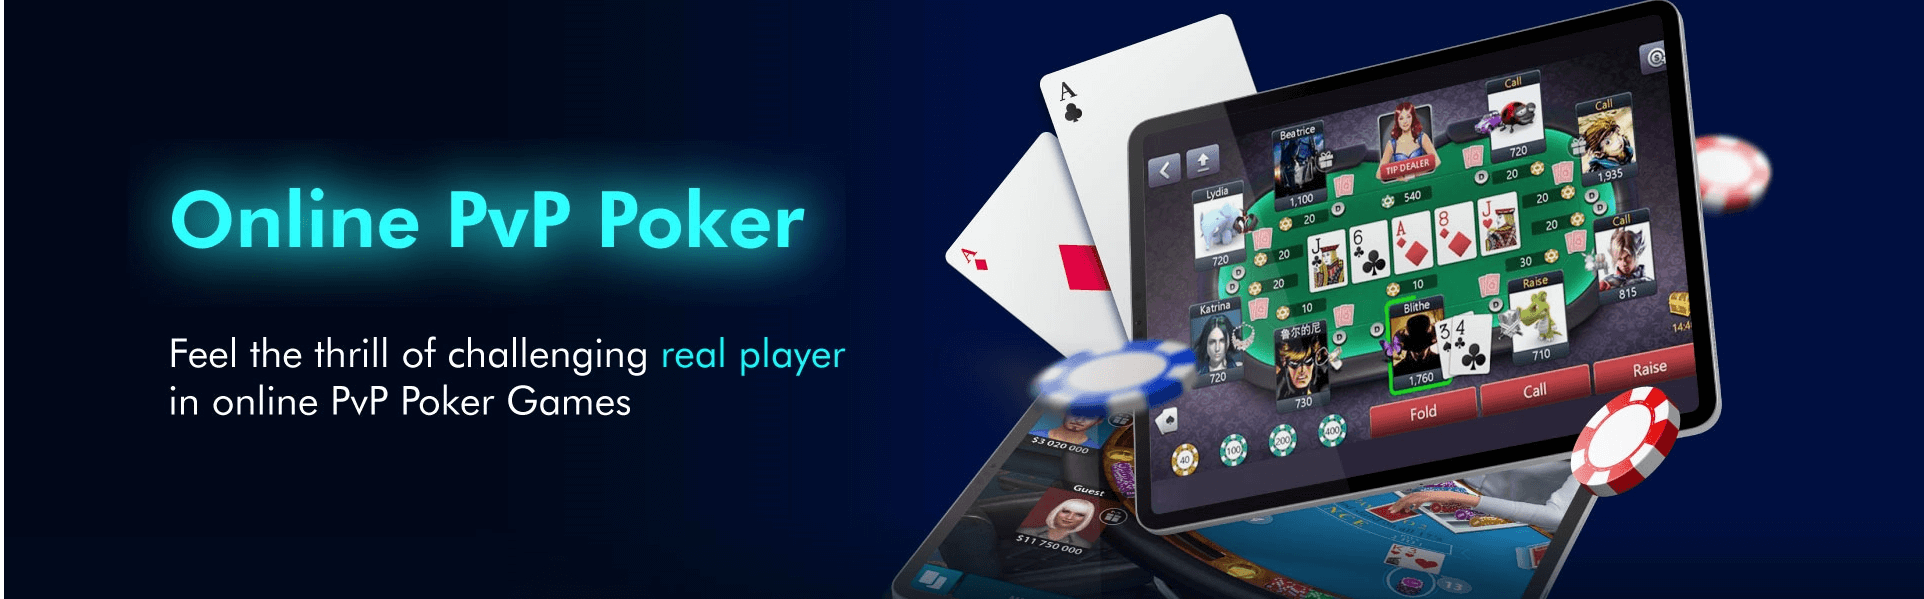 uea8-poker-banner